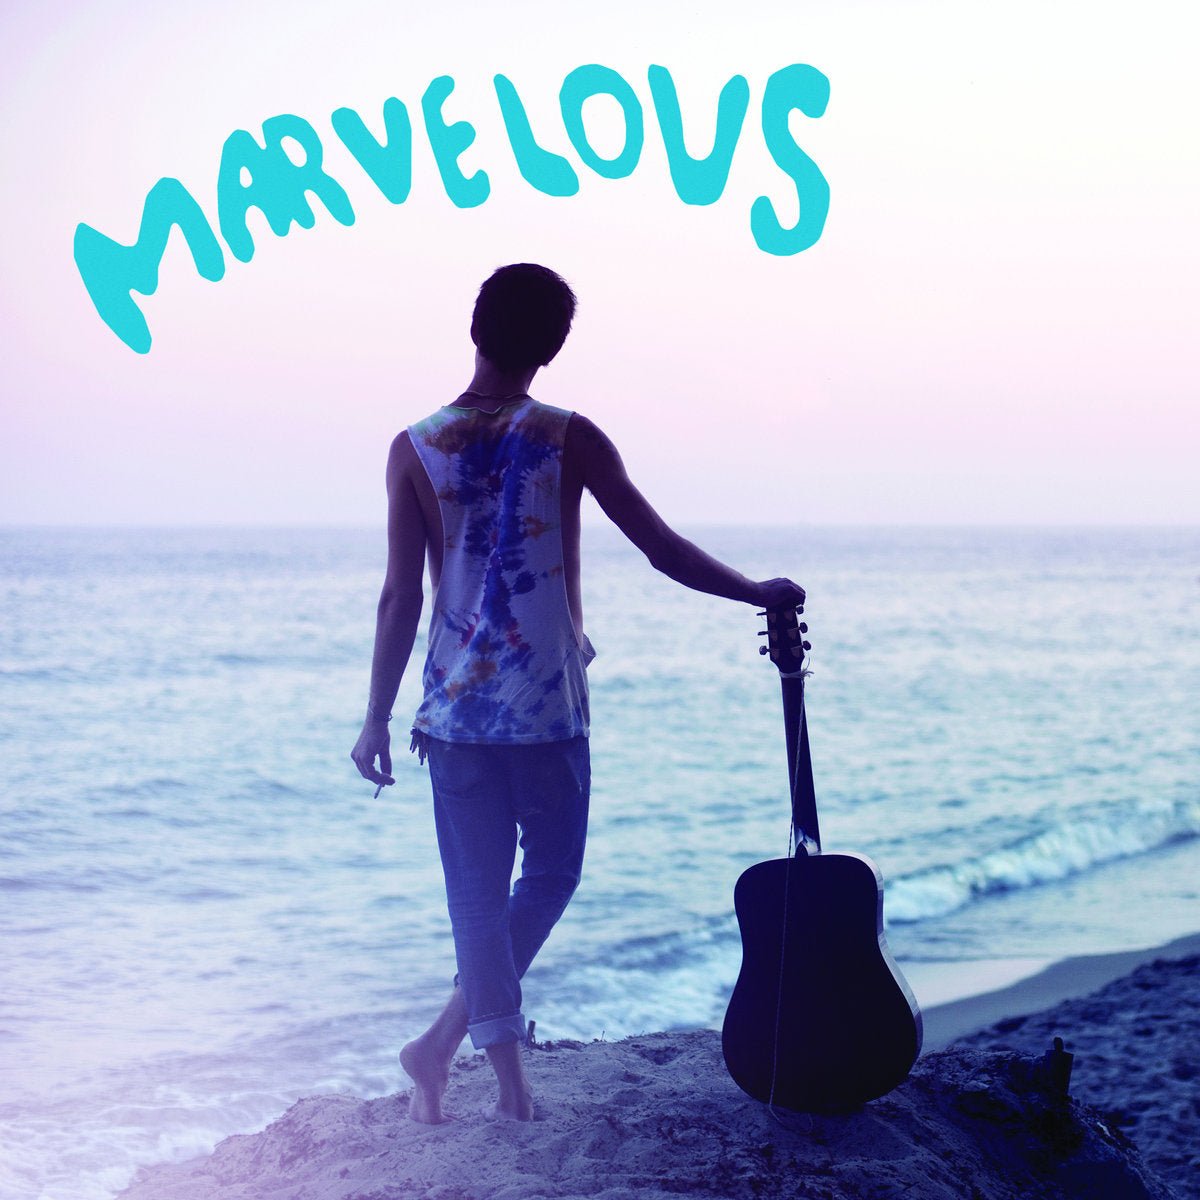 Marvelous Mark - Crushin' LP - Vinyl - Drunken Sailor